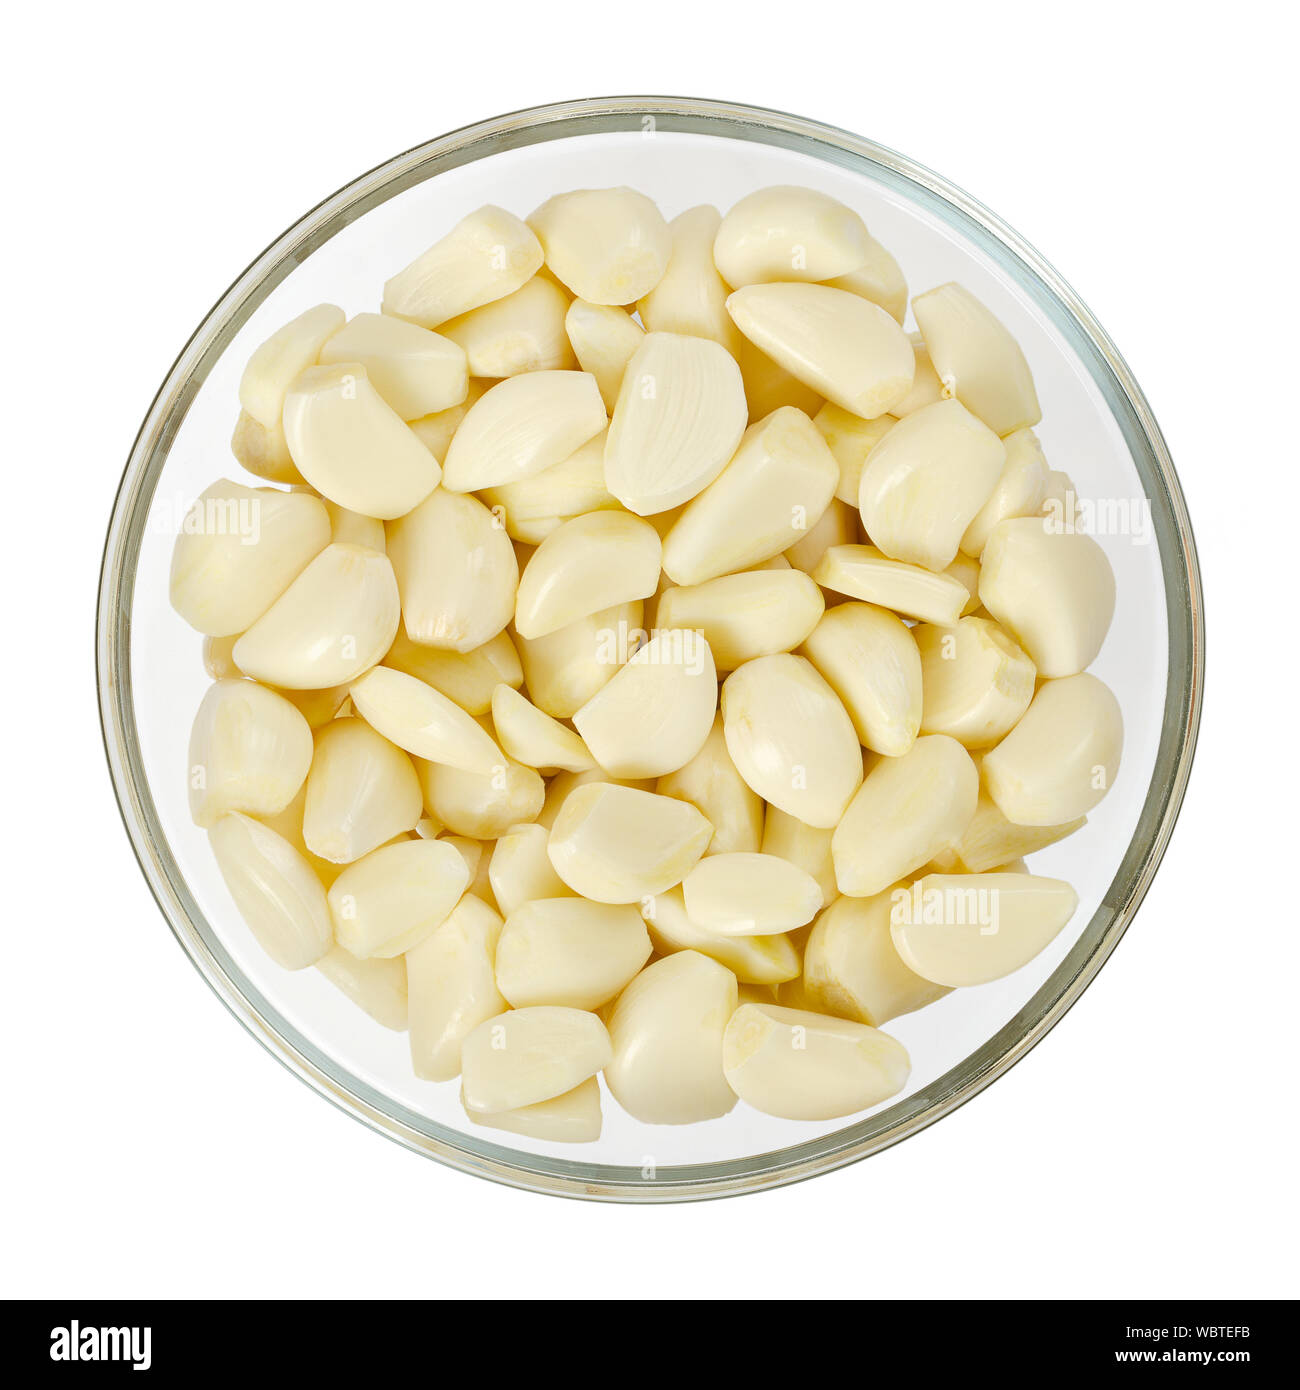 Spicchi di aglio sgusciati in recipiente di vetro, dall'alto. Allium sativum, con sapore pungente, usato come condimento o condimento e in medicina. Foto Stock